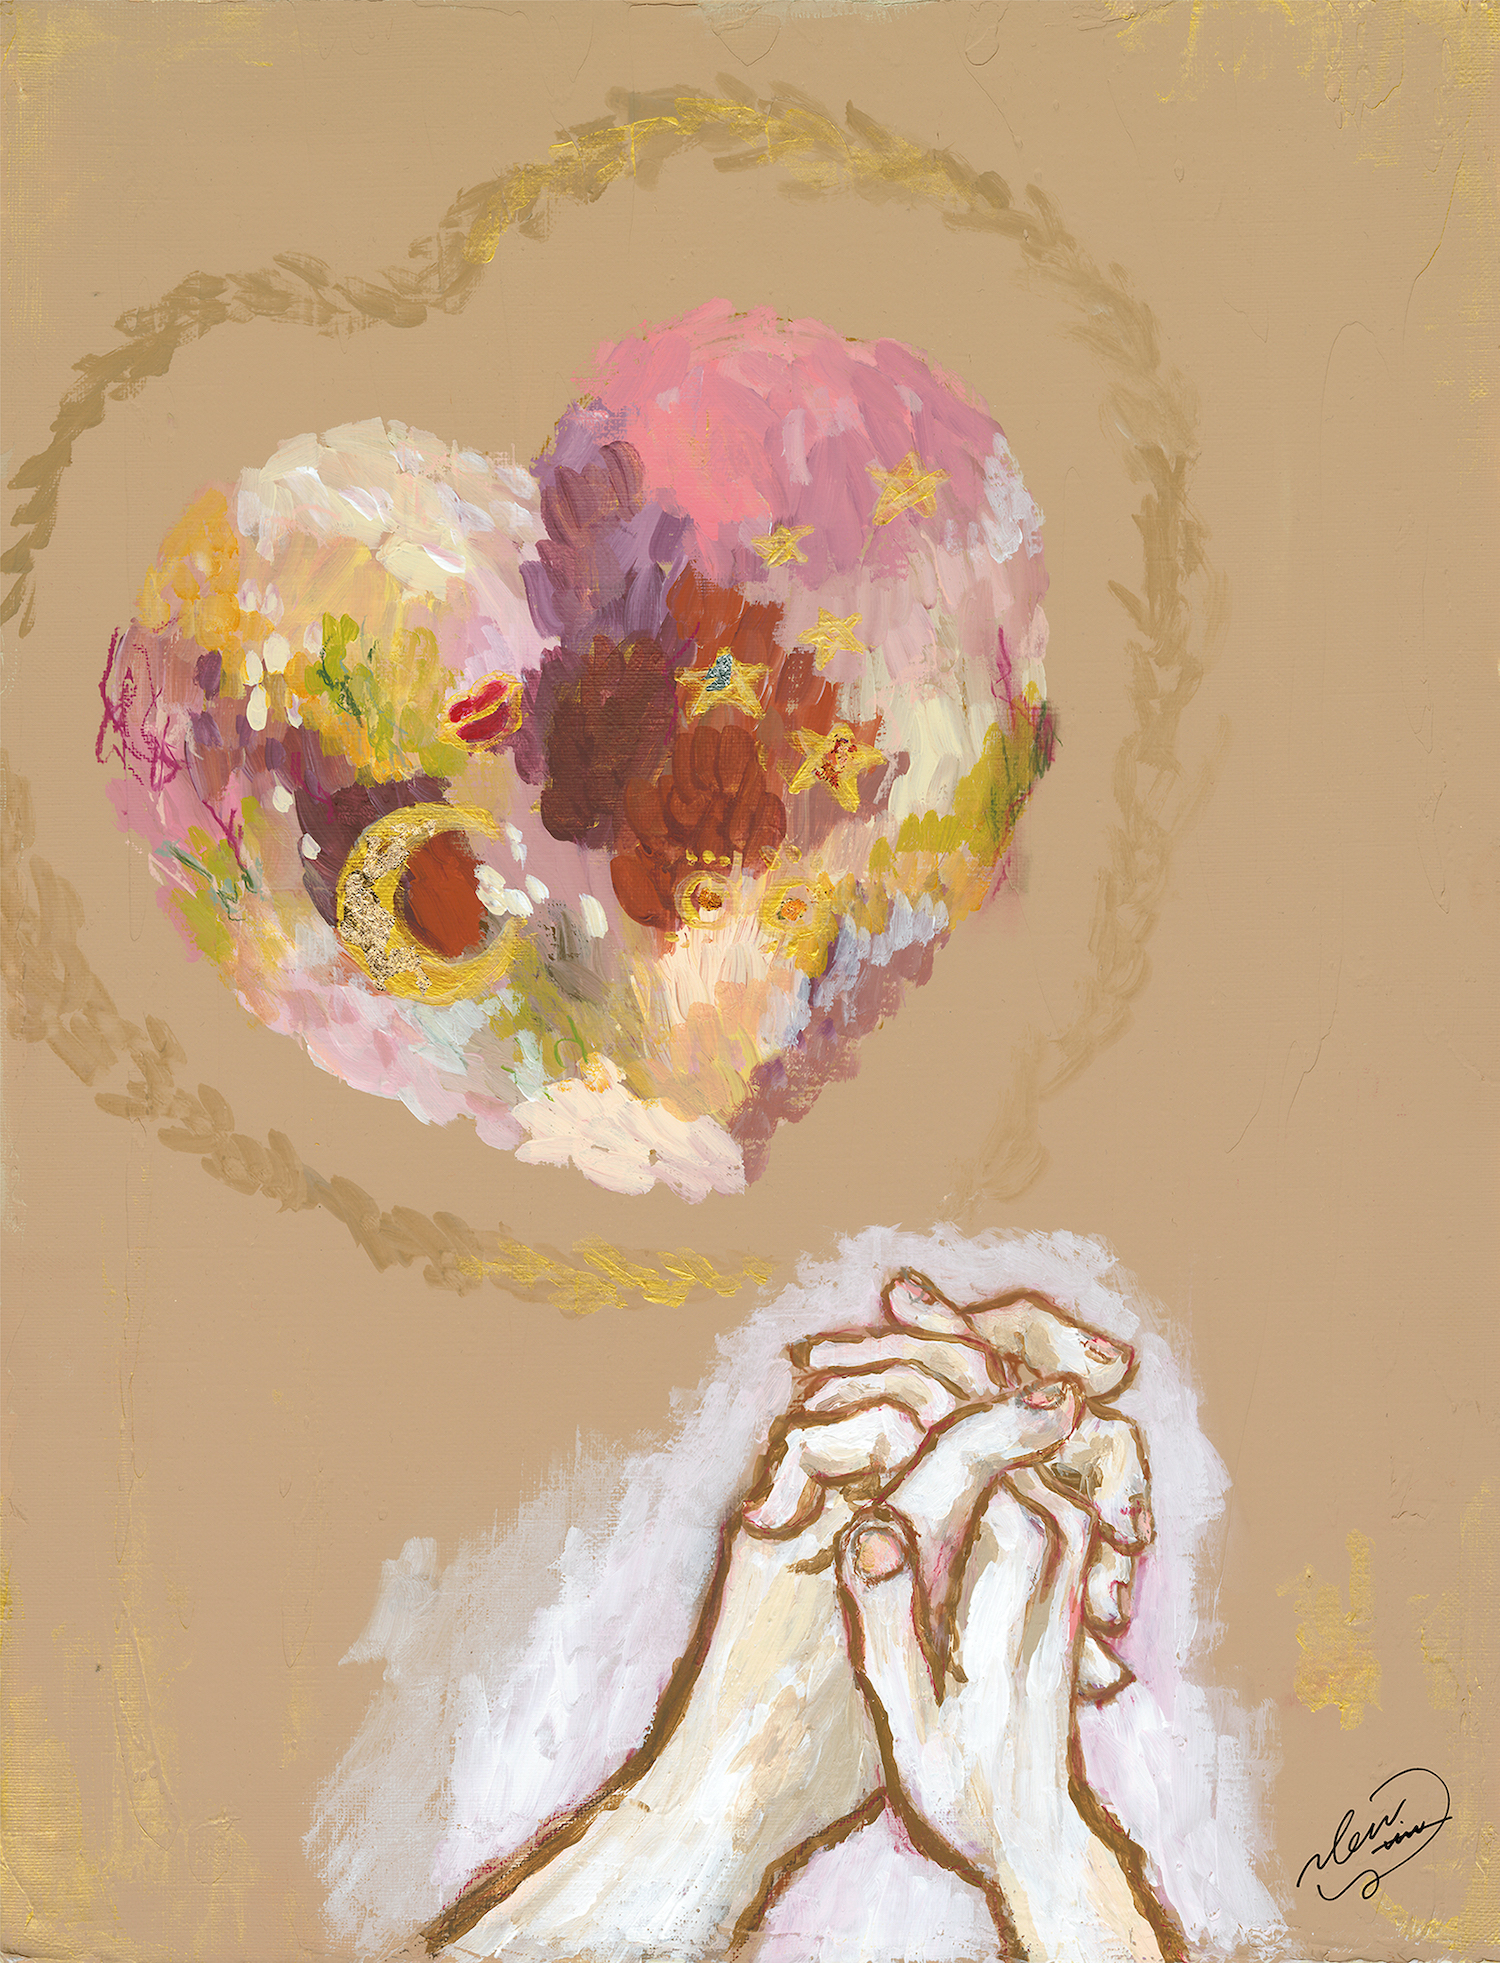 2021年ゴディバのバレンタイン限定コレクション「きらめく想い」から受けたインスピレーションをもとに描いたアーティスト「のん」の作品